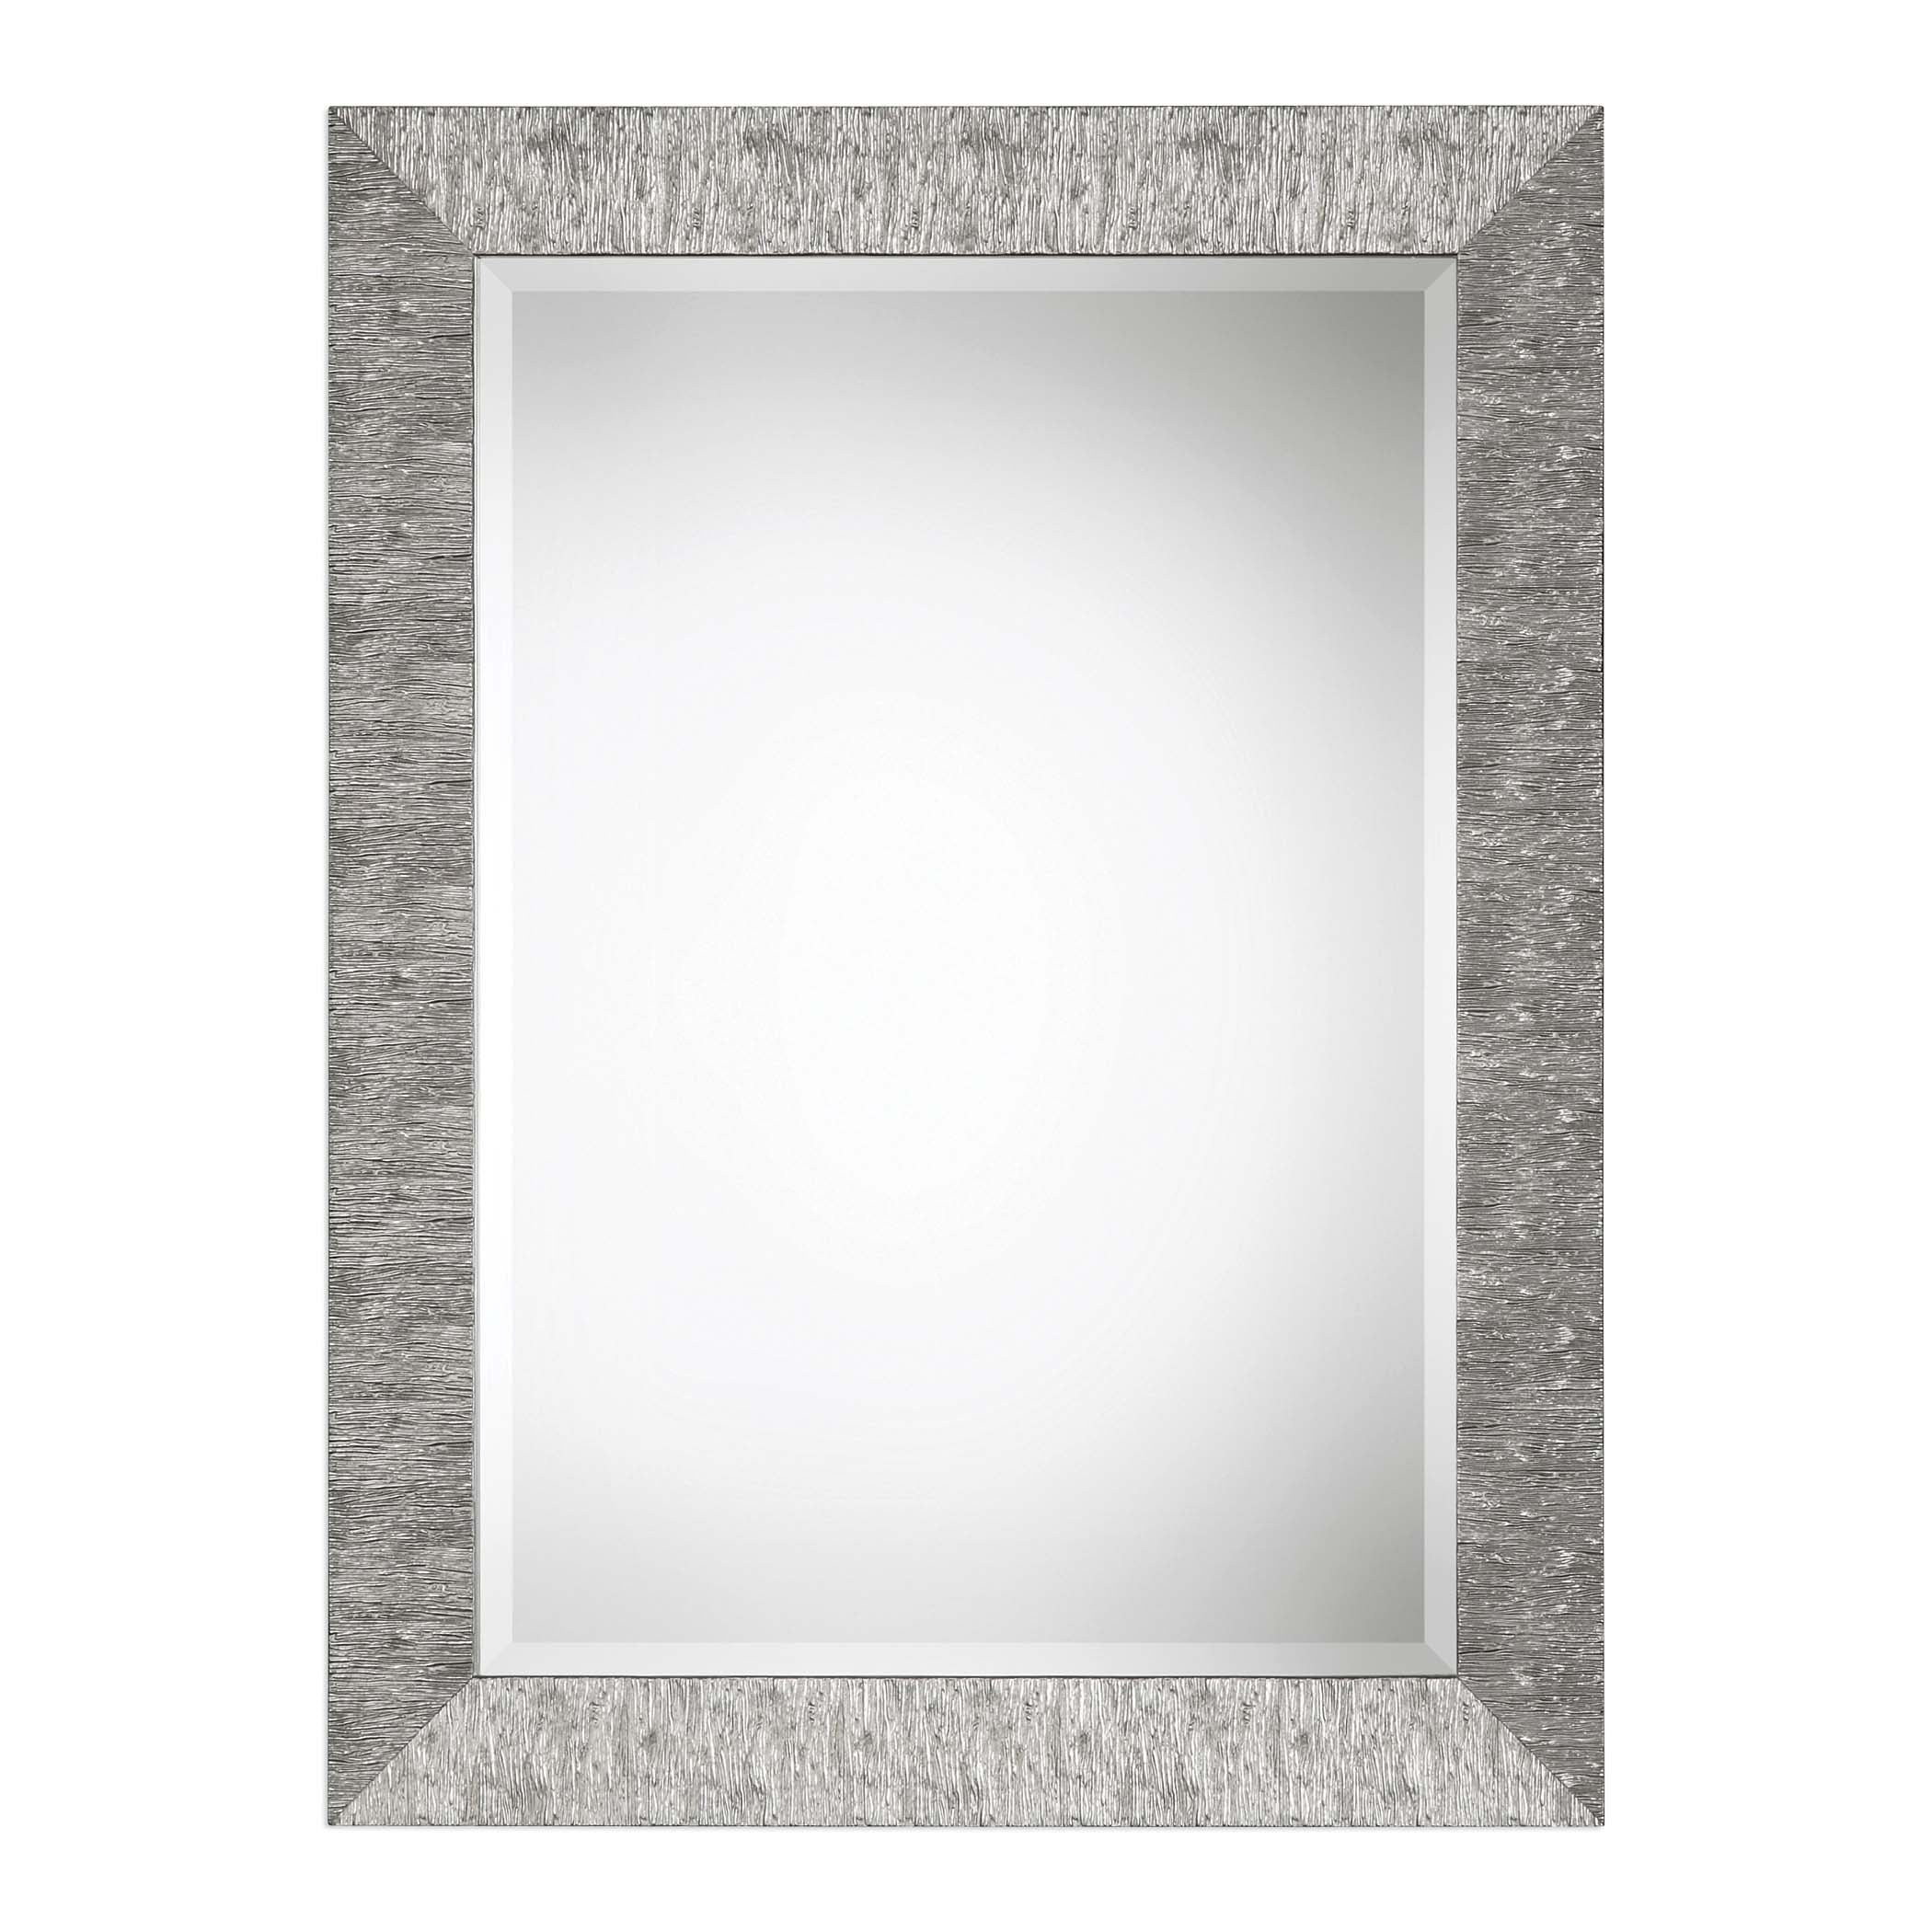 Decor Market Mirror Textured Surface - Metallic Silver Finish